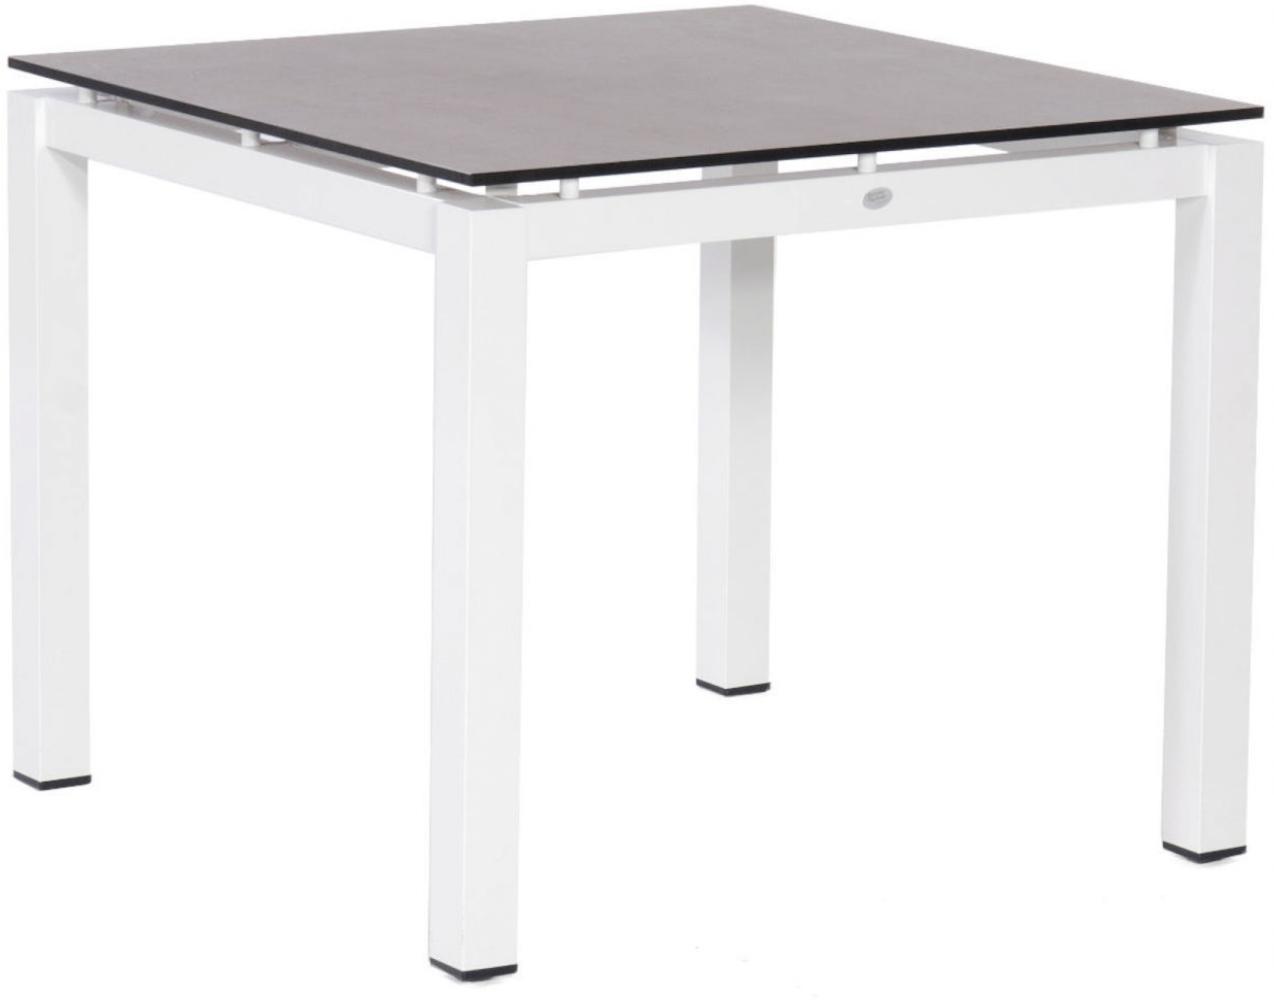 Sonnenpartner Gartentisch Base 90x90 cm Aluminium weiß Tischsystem HPL Teak Tischplatte Solid Old Teak natur 80050535 Bild 1